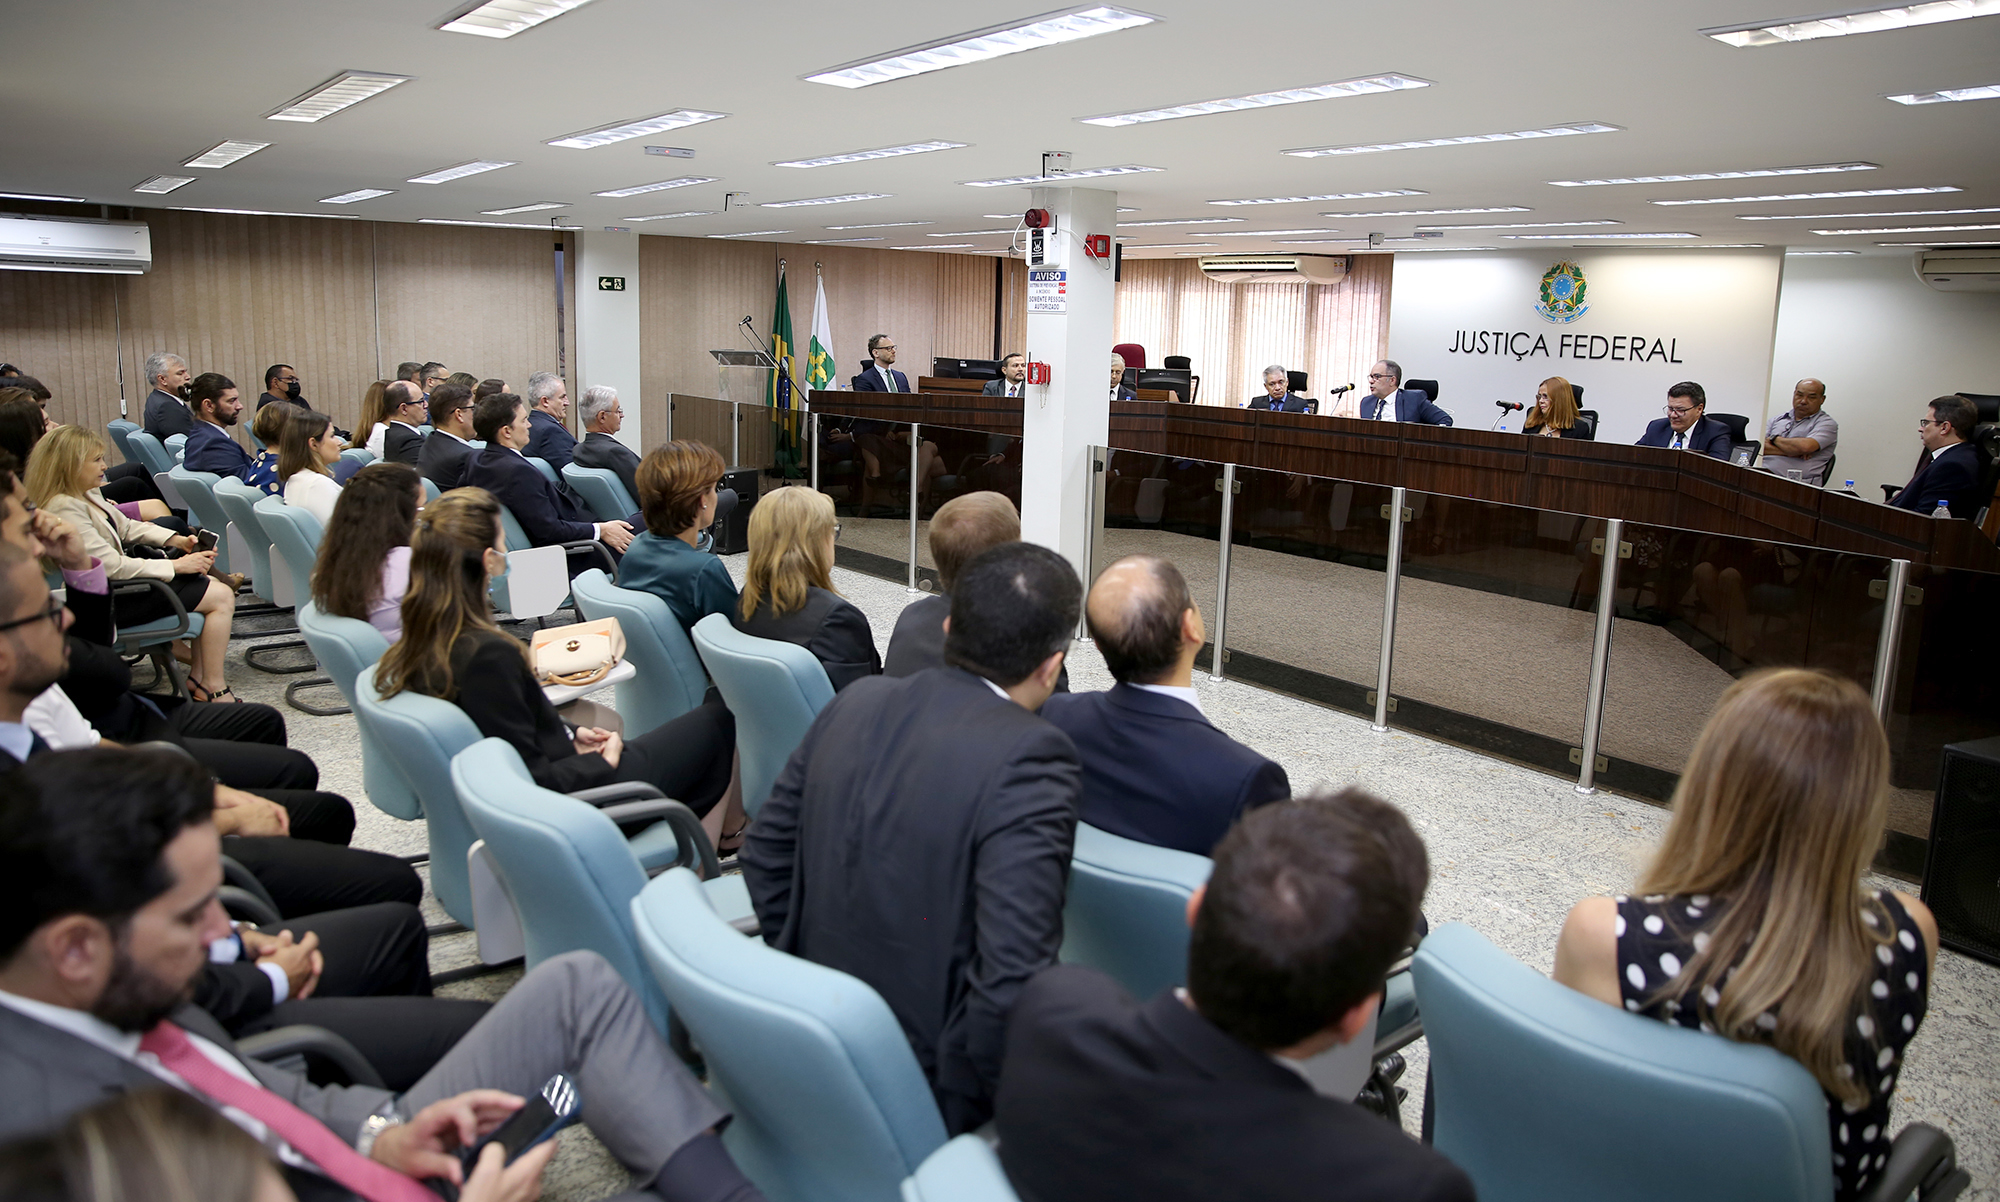 INSTITUCIONAL: Corregedoria Regional da 1ª Região realiza atividades de correição ordinária na Justiça Federal no DF